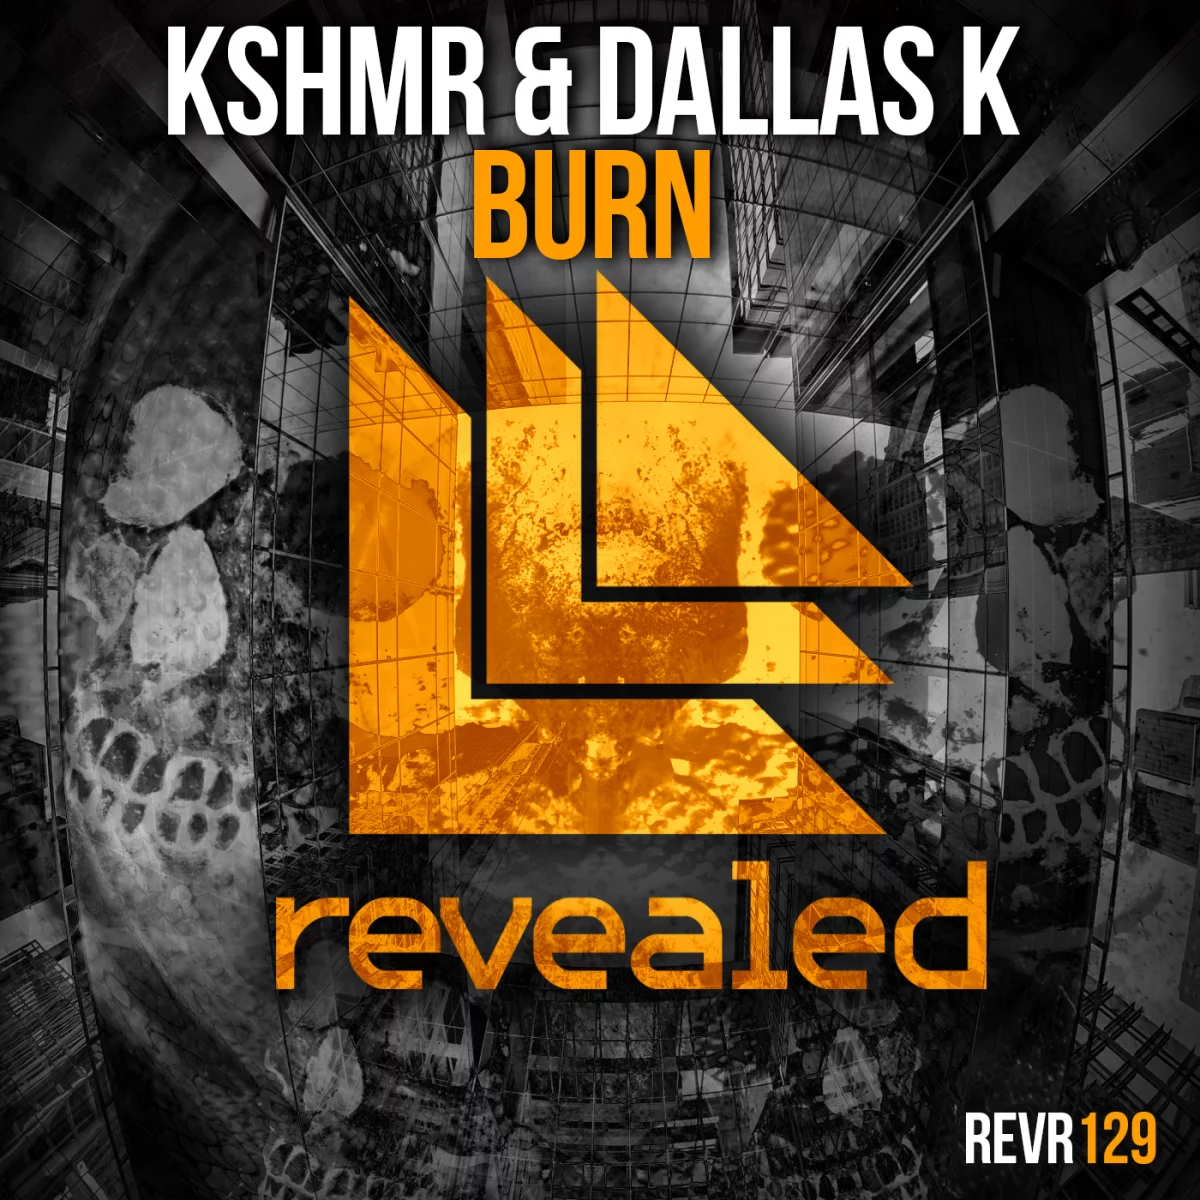 Burn - KSHMR⁠ DallasK⁠ 